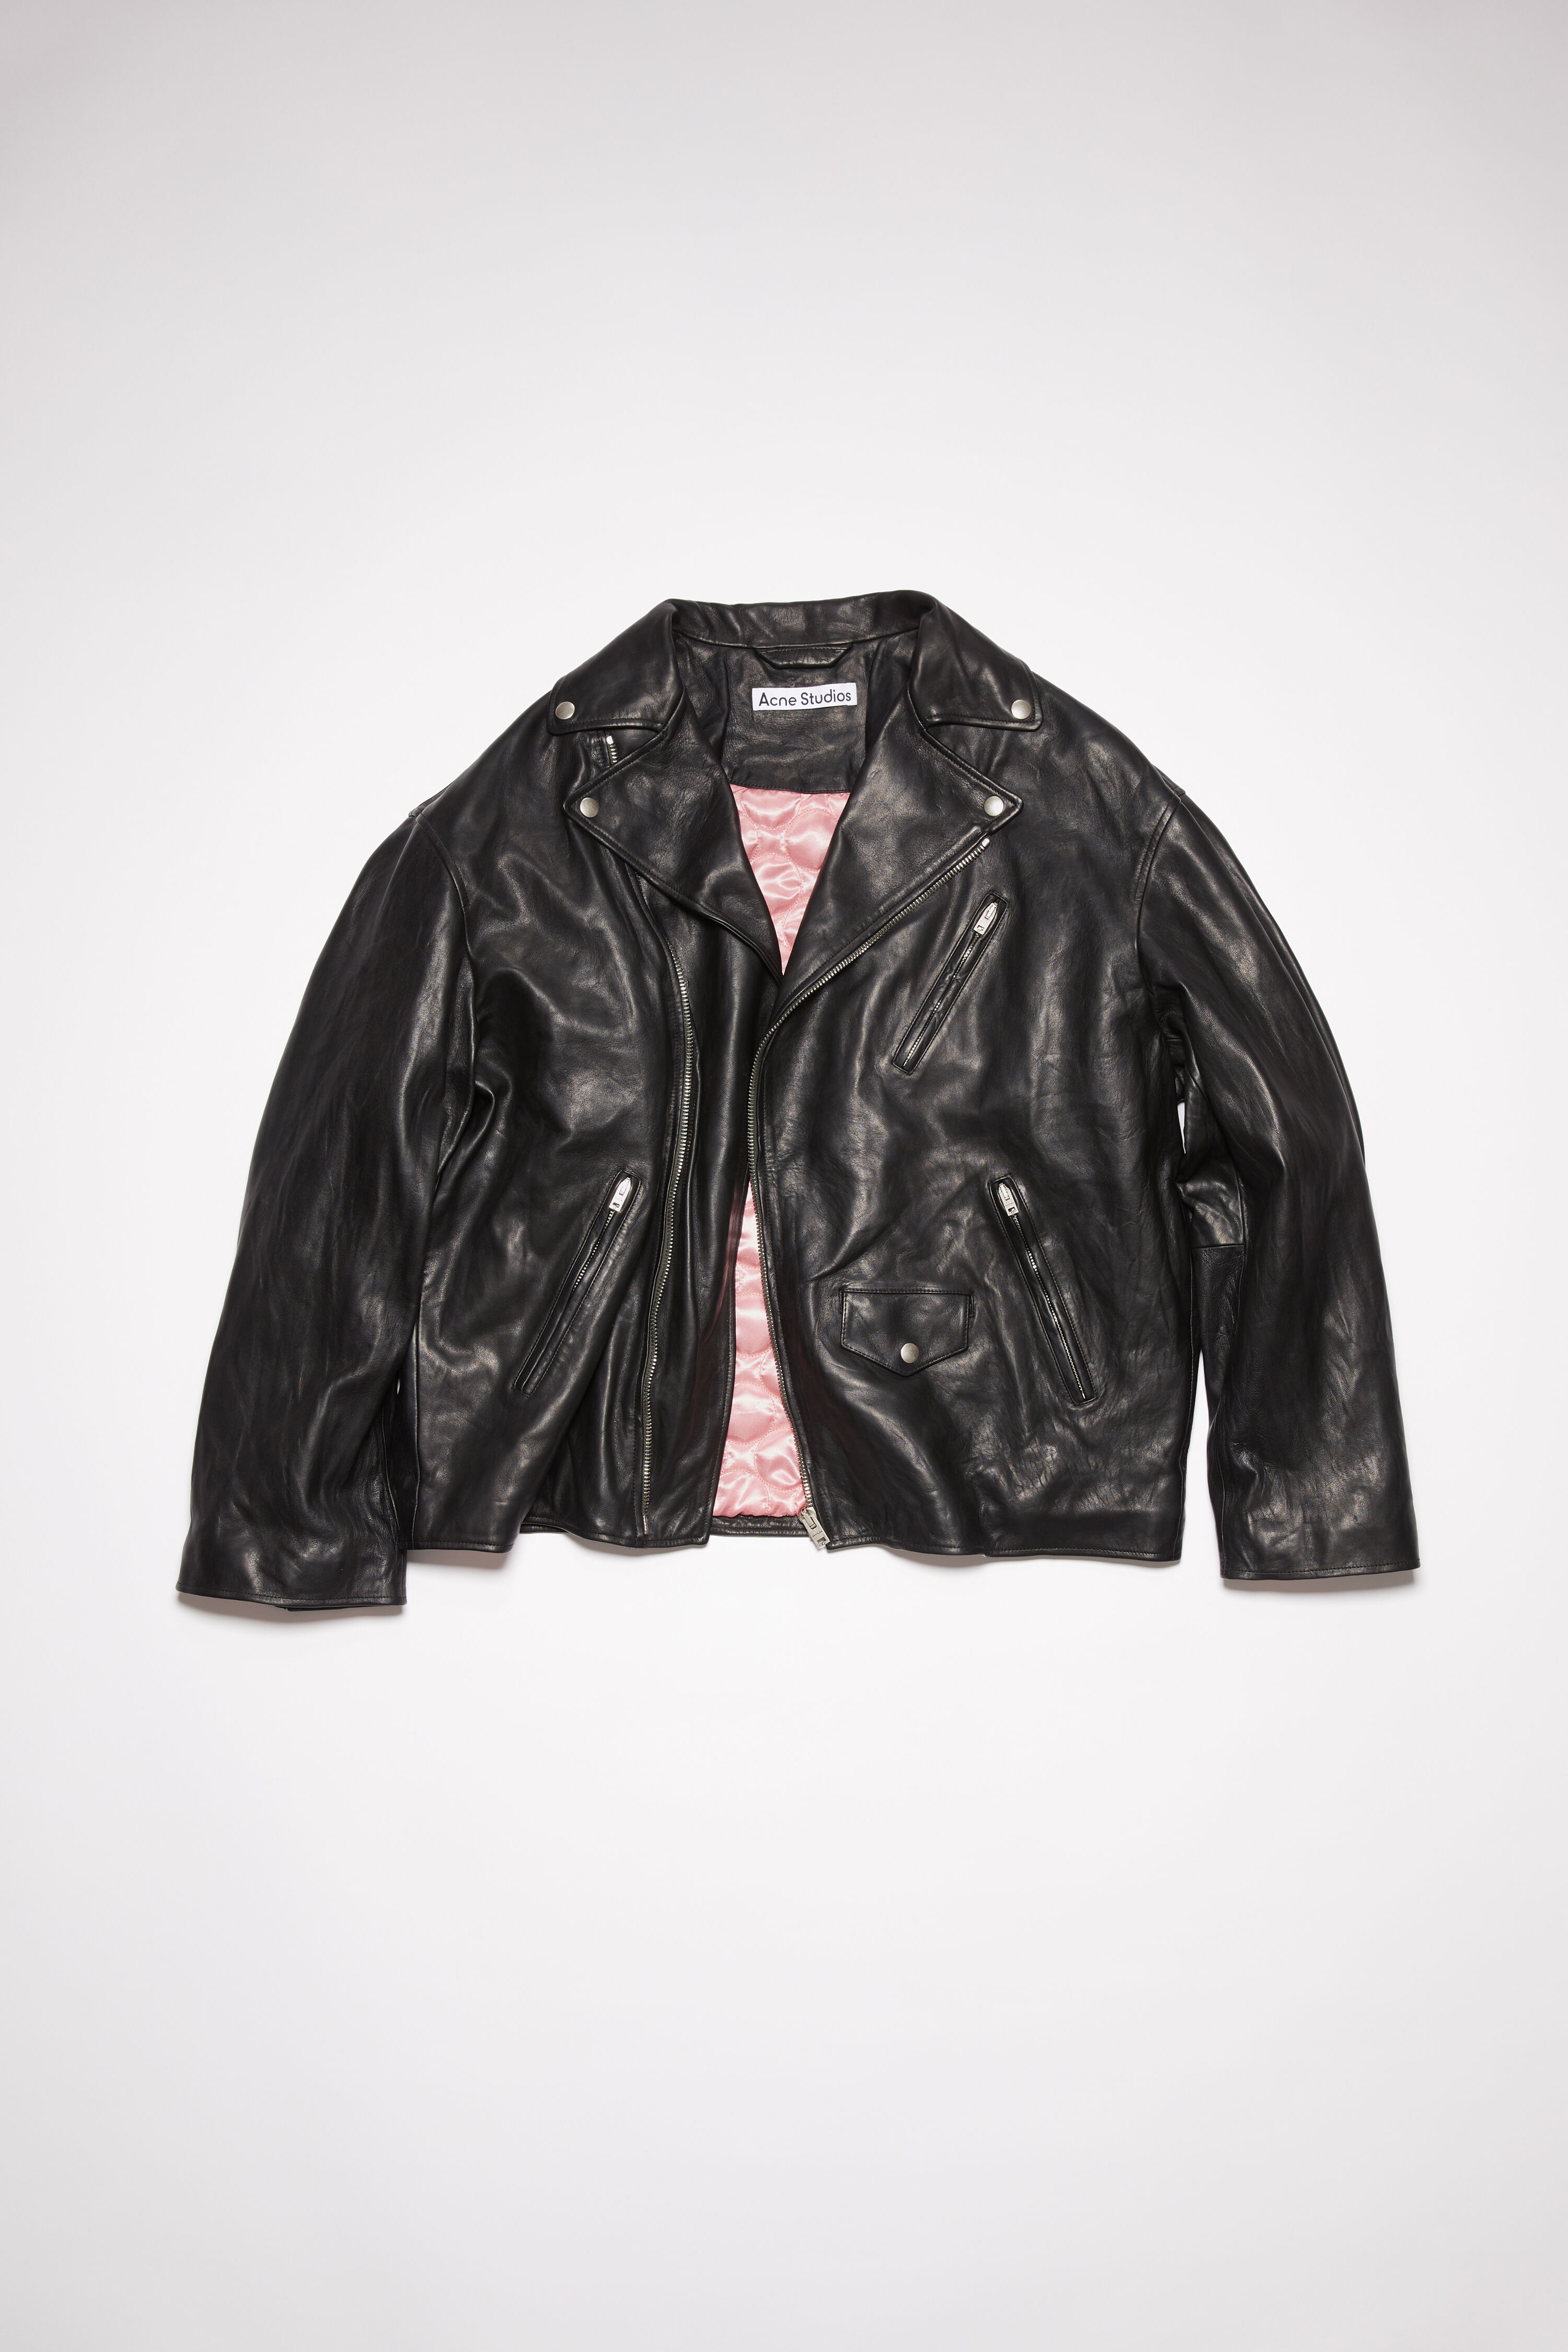 Acne Studios leather Jacket レザージャケット - レザージャケット